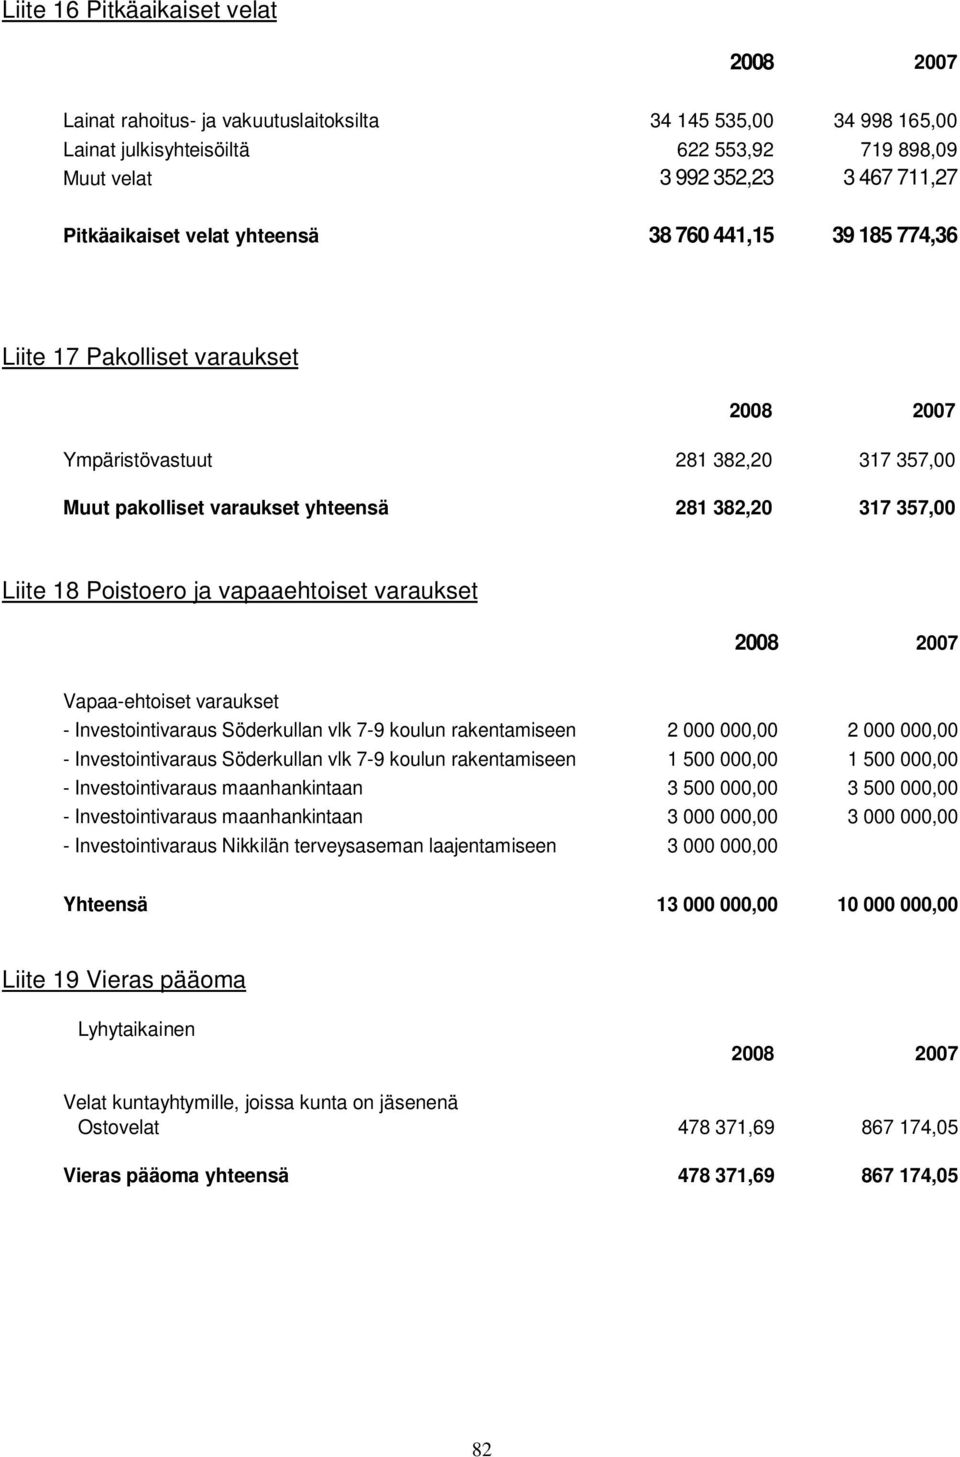 vapaaehtoiset varaukset Vapaa-ehtoiset varaukset - Investointivaraus Söderkullan vlk 7-9 koulun rakentamiseen 2 000 000,00 2 000 000,00 - Investointivaraus Söderkullan vlk 7-9 koulun rakentamiseen 1